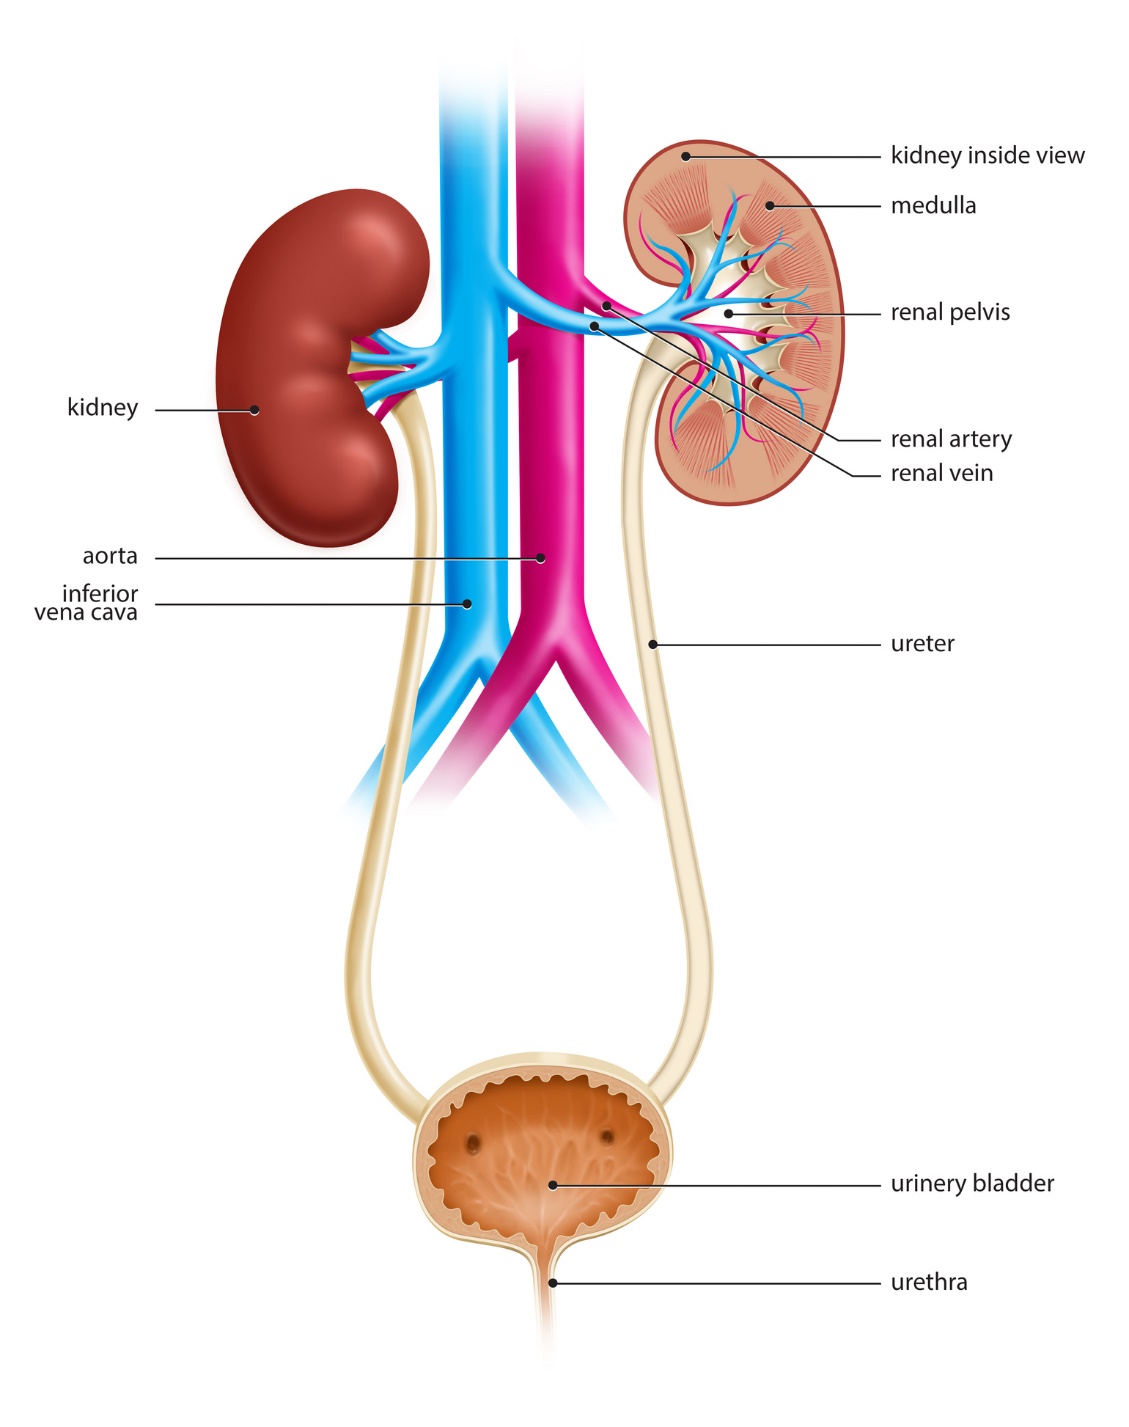 močový systém, obličky (vnútorný pohľad na obličkovú dreň, panvičku, obličkové cievy - artériu a vénu), močová trubica, mechúr, aorta a dolná dutá žila